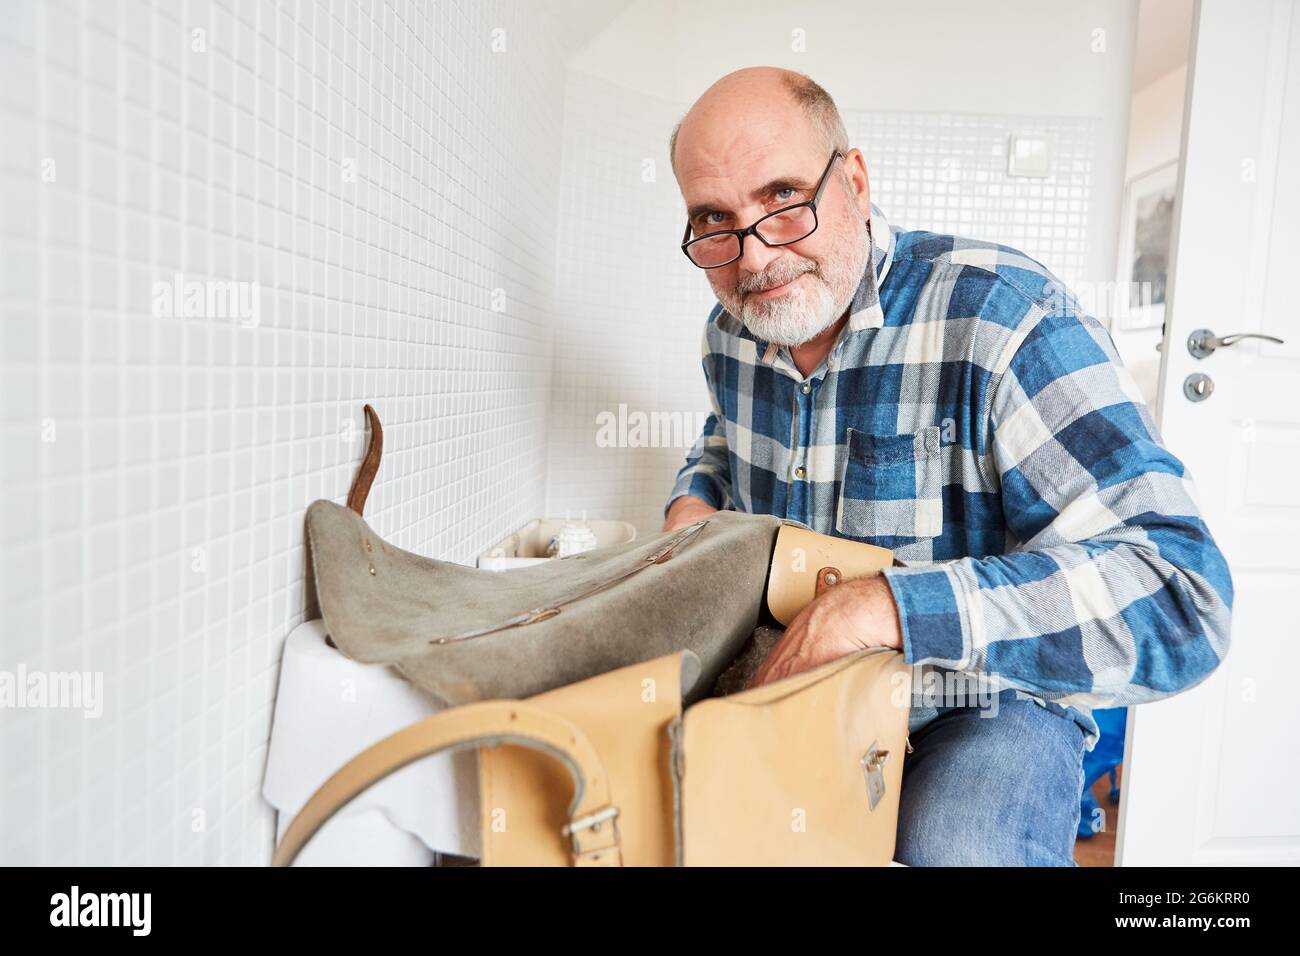 Caretaker as plumber handyman with tool bag repairs broken toilet Stock Photo